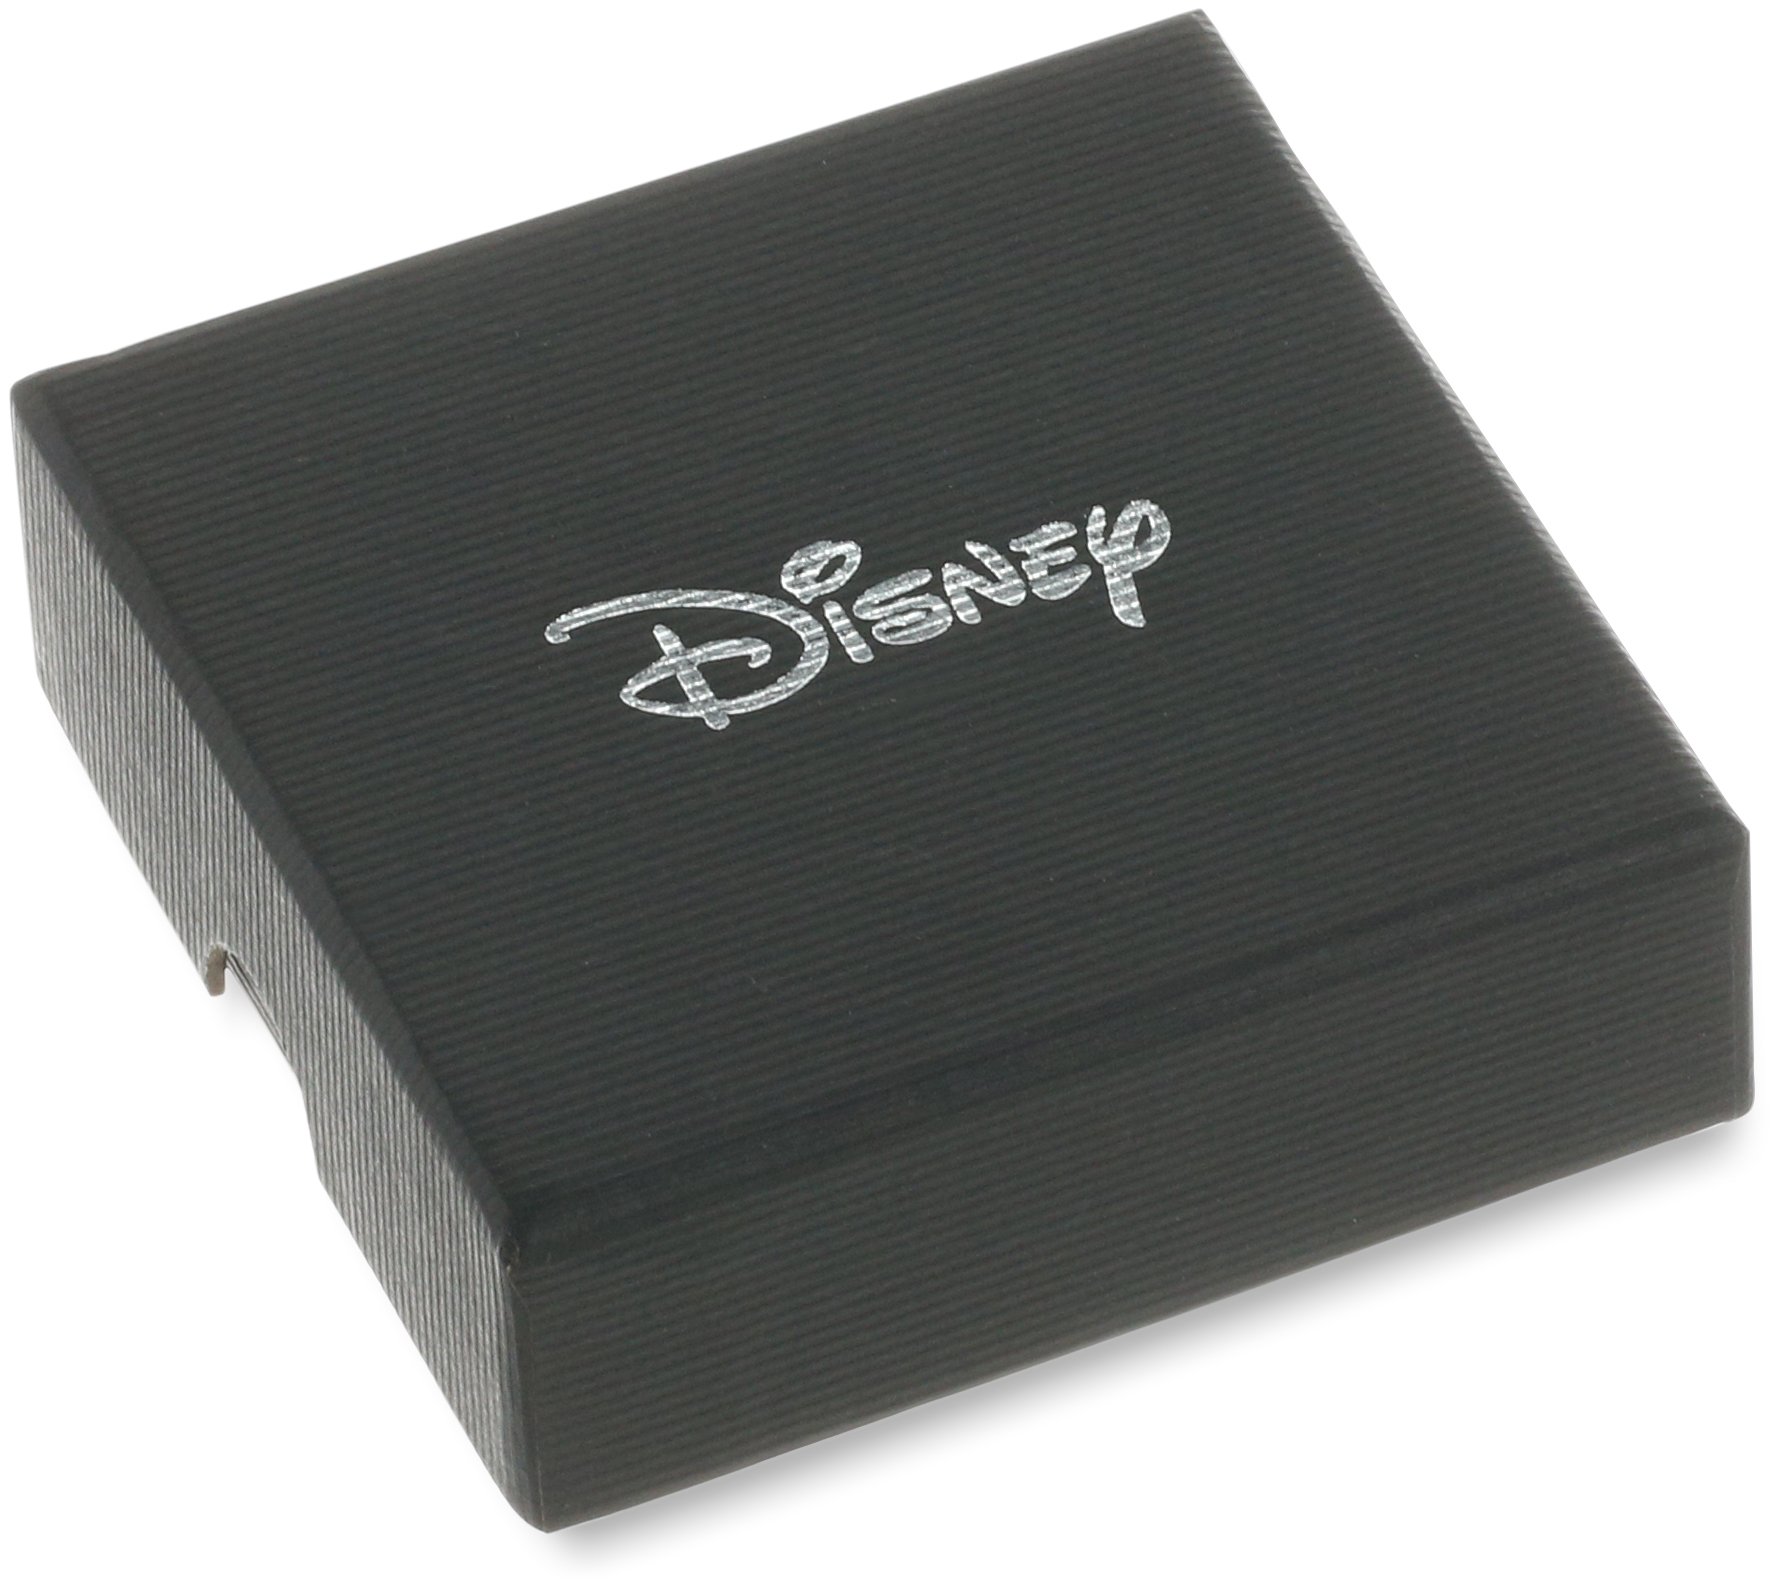 Disney Mickey Mouse Adult Pocketwatch Analog Quartz Watch